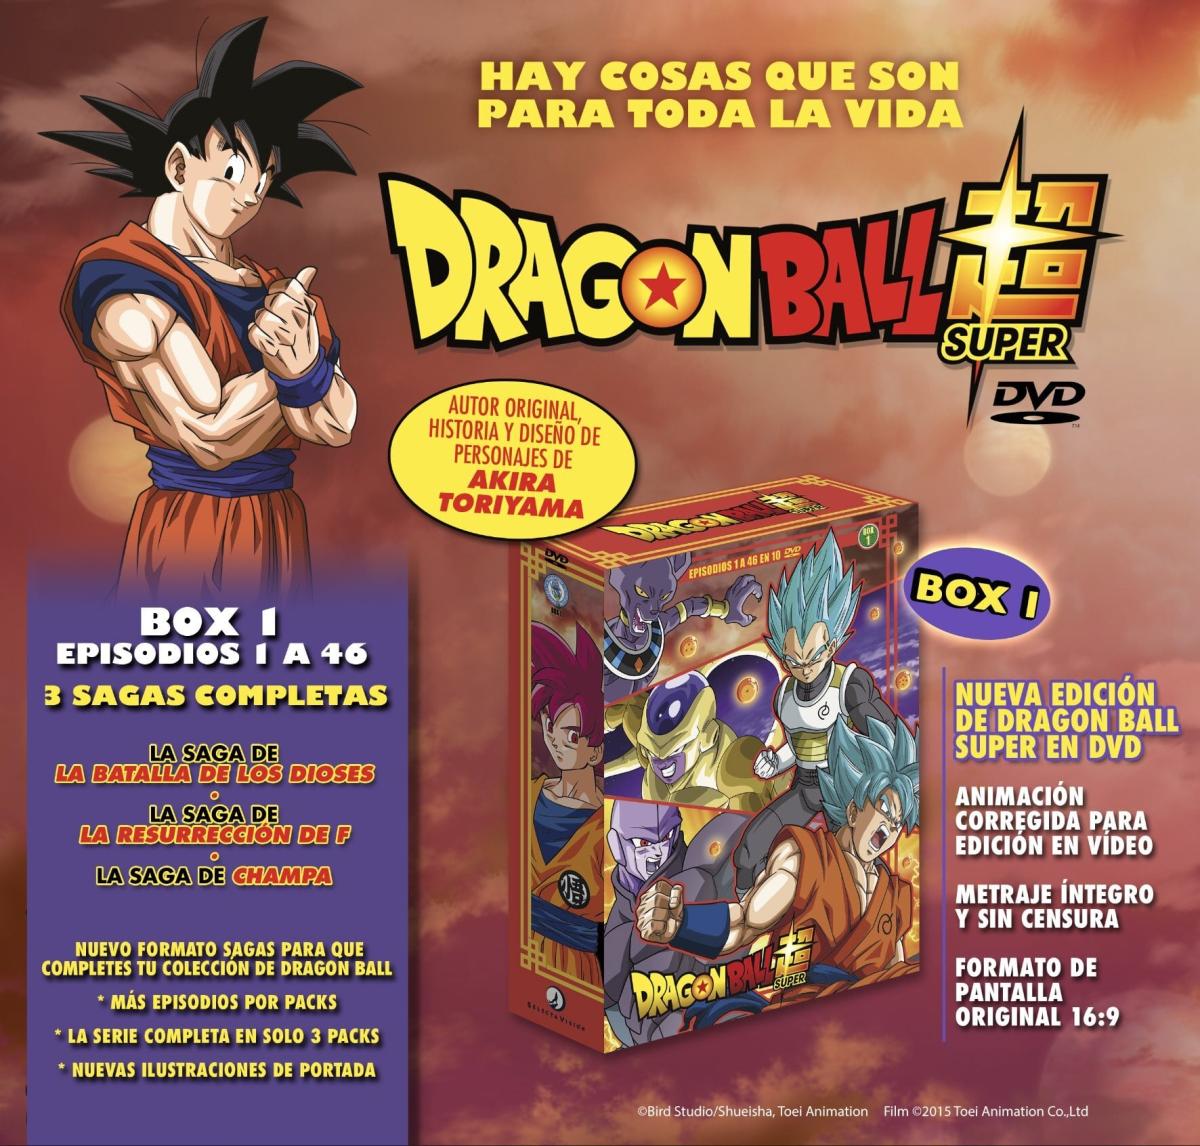 Dragon Ball Super - Anunciada una nueva en DVD de la serie. ¡La serie en tres cómodos estuches exclusivos en España! | Hobbyconsolas